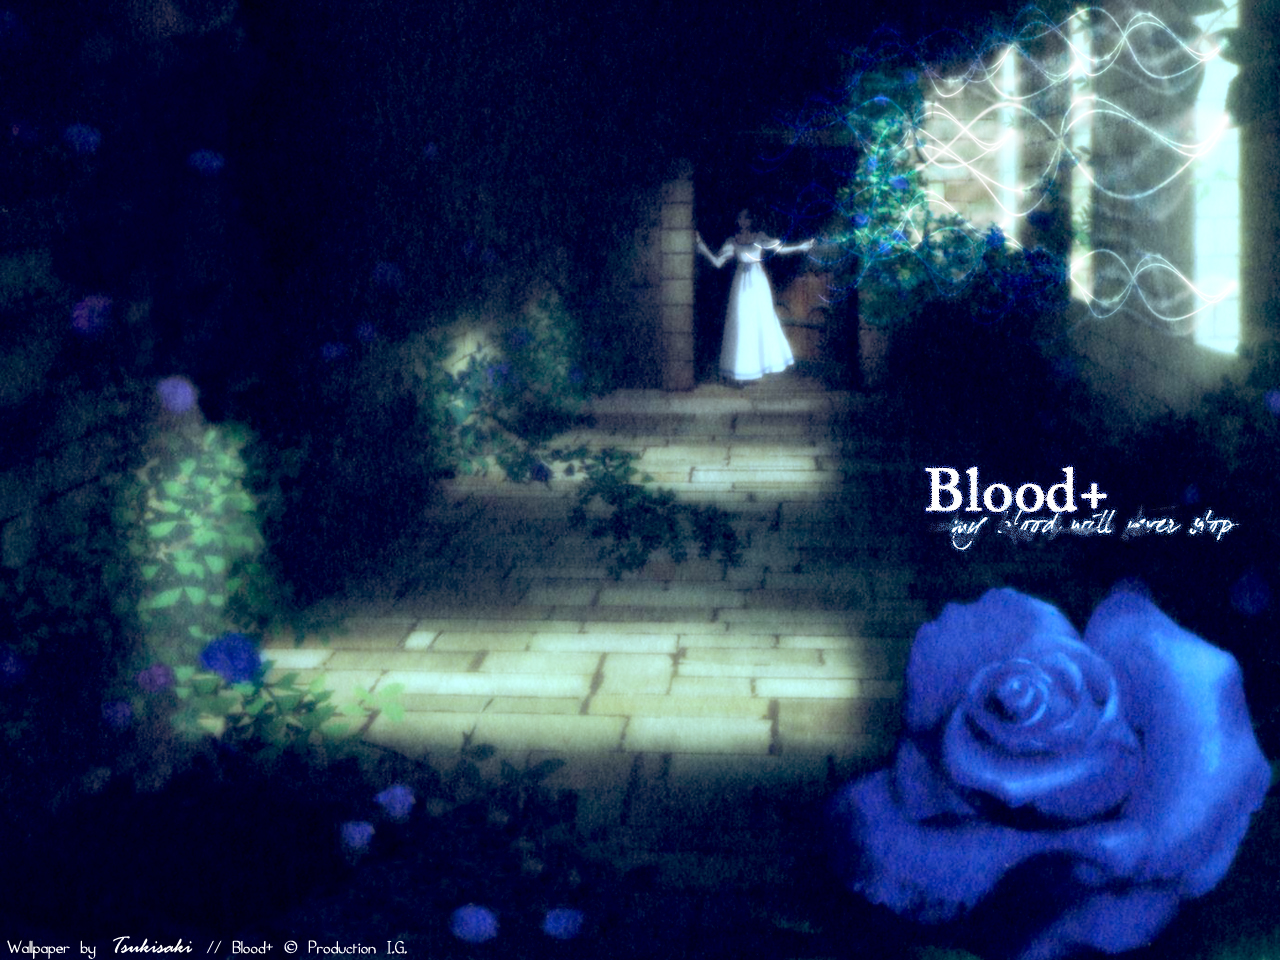 Descarga gratuita de fondo de pantalla para móvil de Animado, Sangre+.